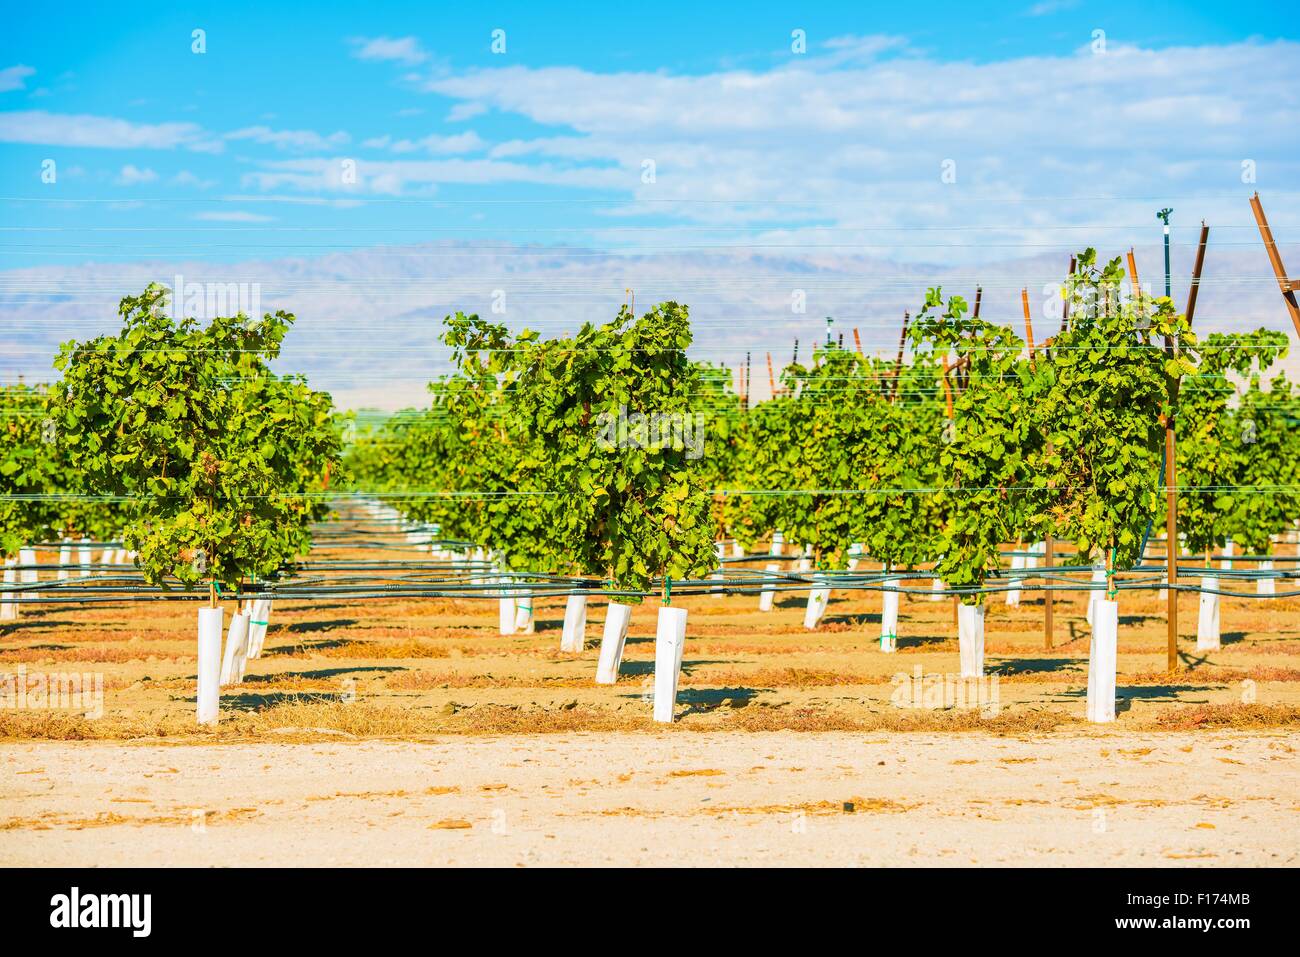 Le uve dei vigneti di piantagione in Indio, Coachella Valley, California, Stati Uniti Foto Stock